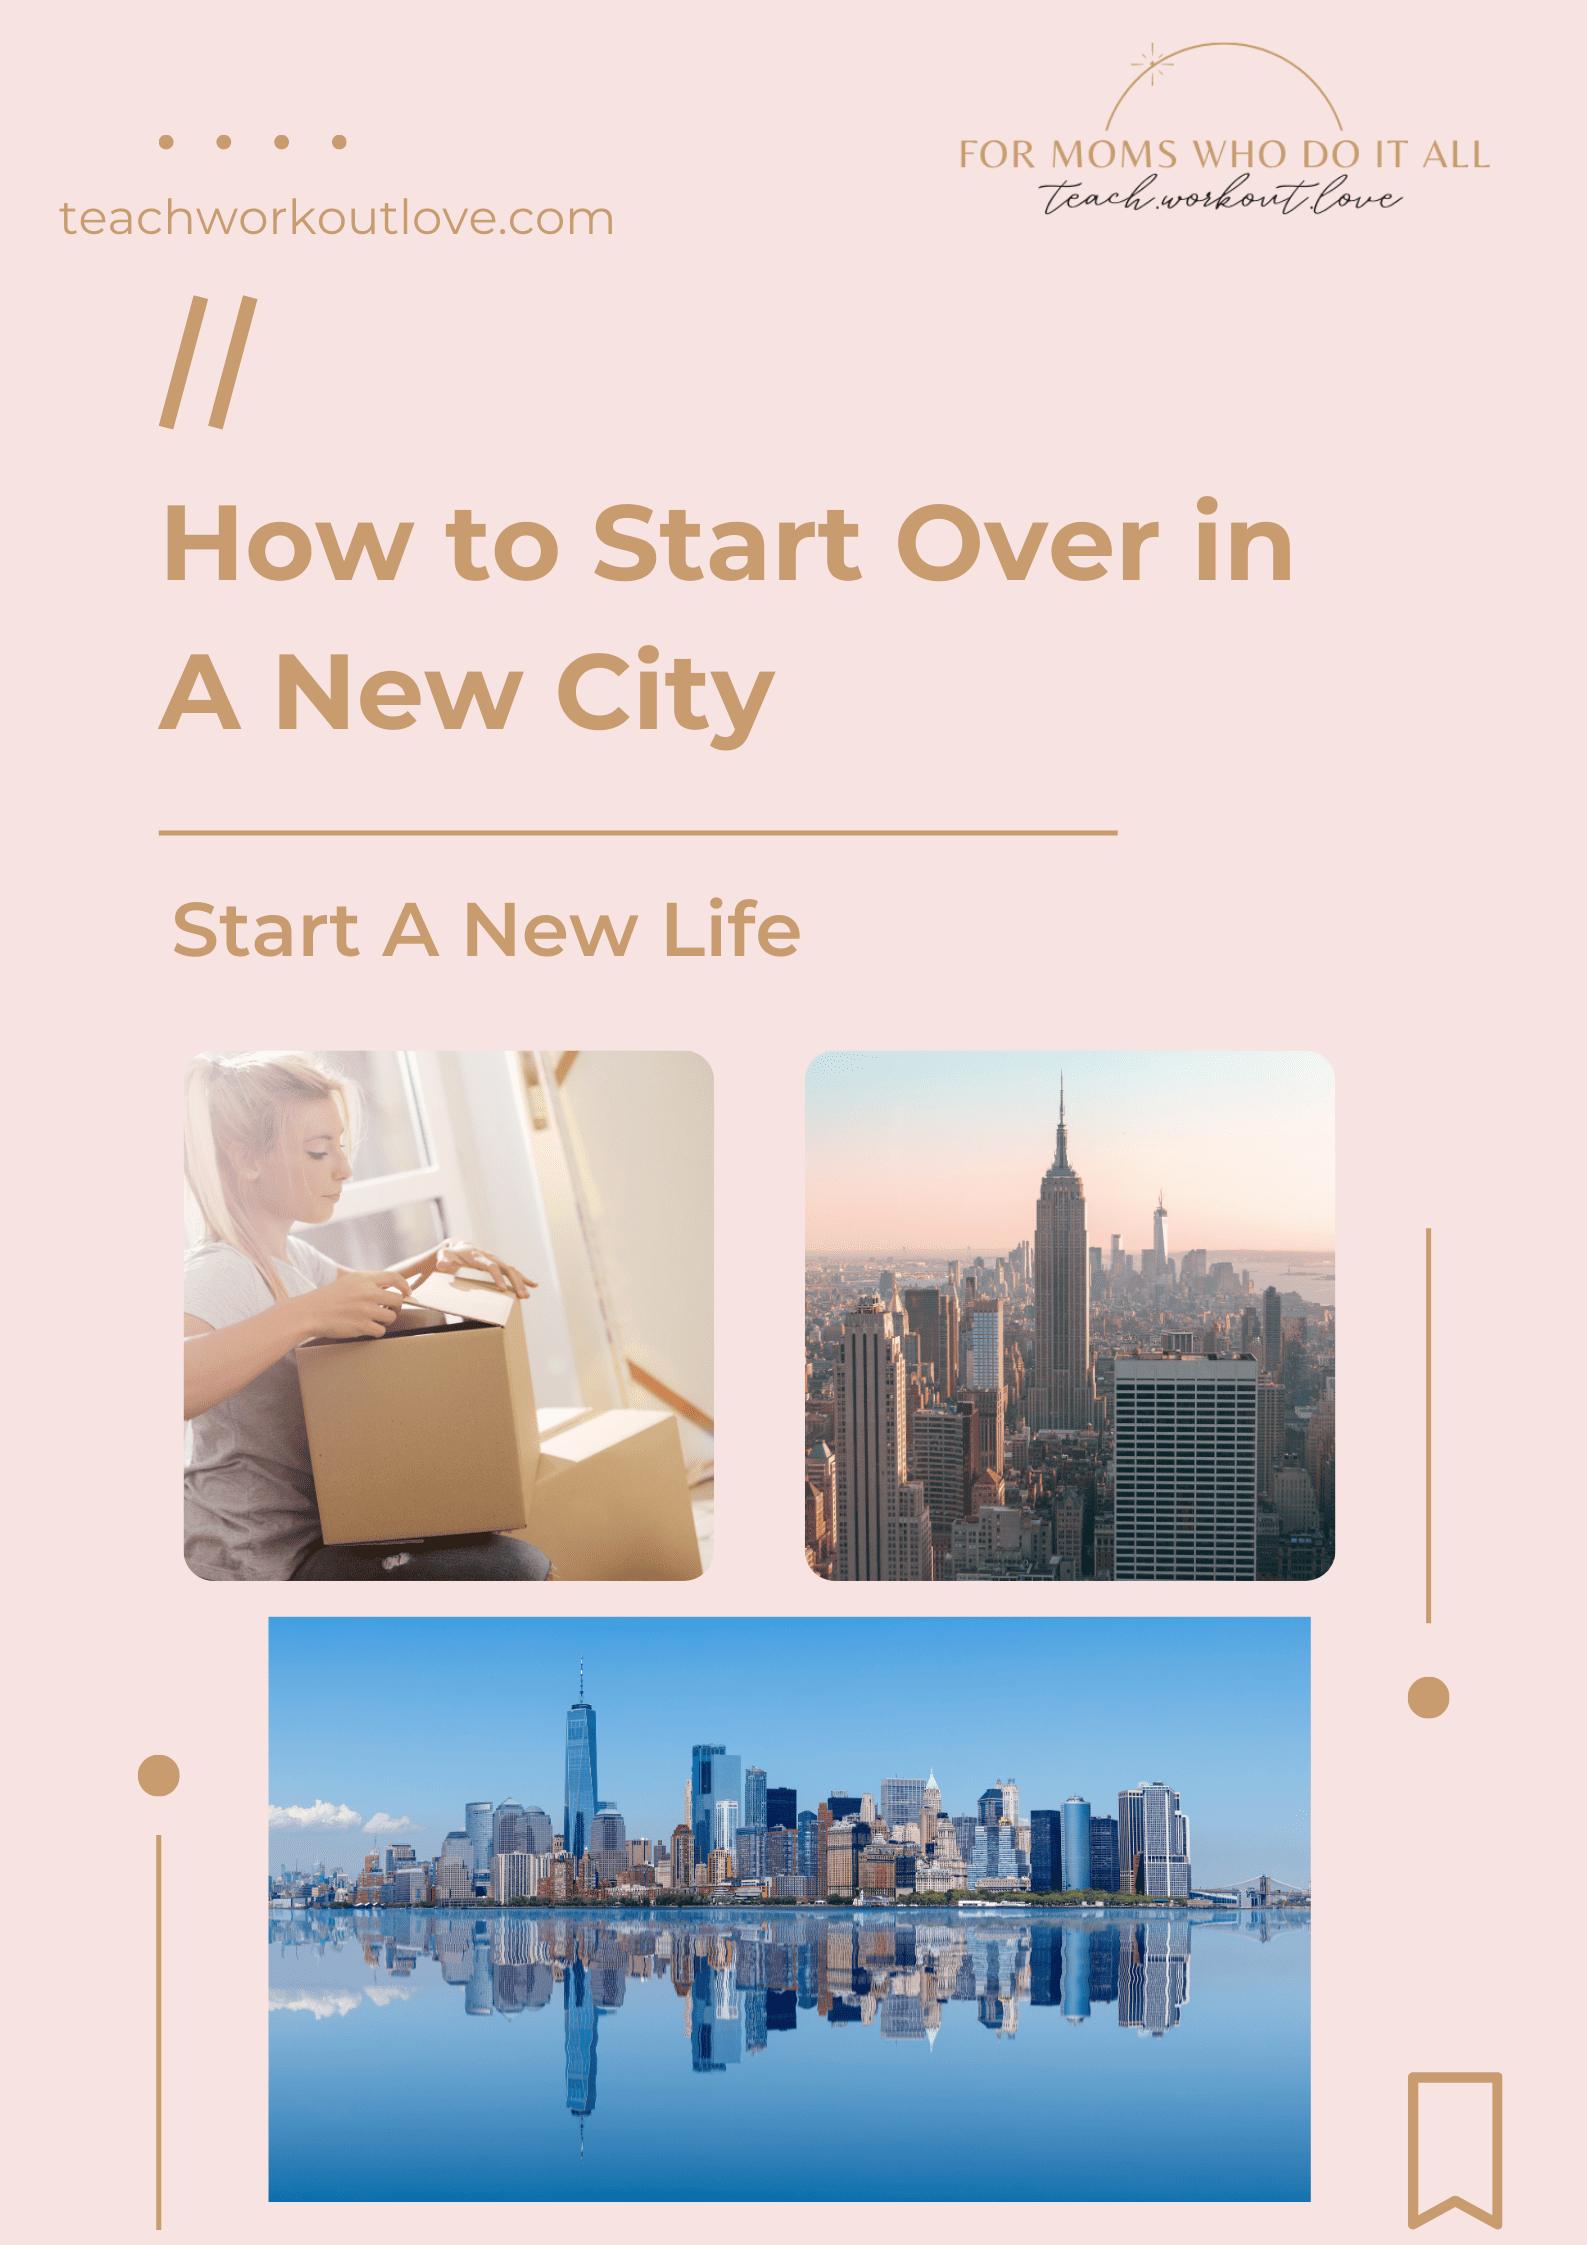 Start A New Life